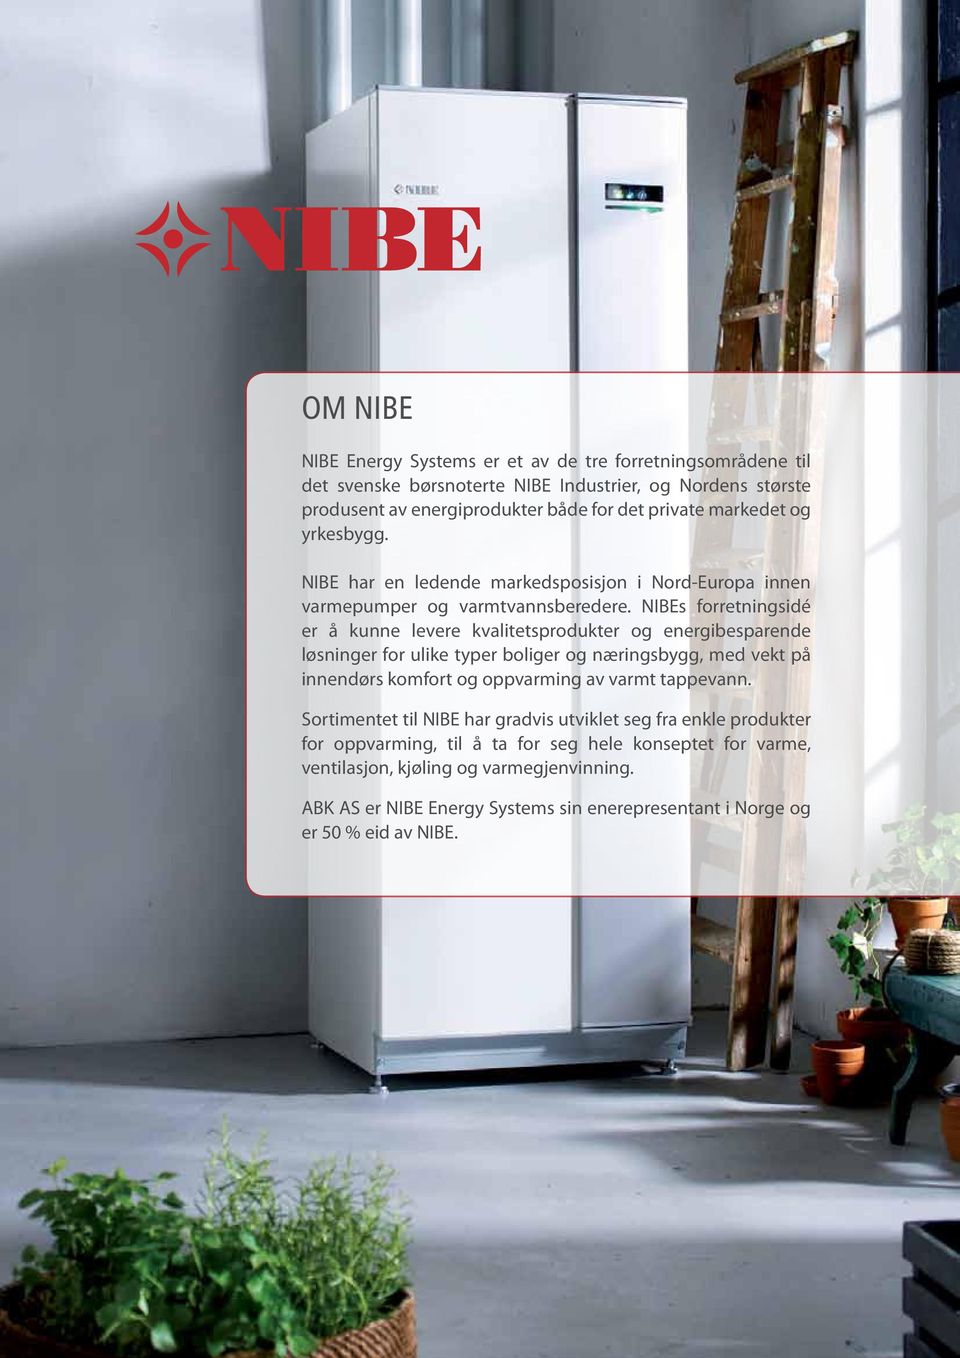 NIBEs forretningsidé er å kunne levere kvalitetsprodukter og energibesparende løsninger for ulike typer boliger og næringsbygg, med vekt på innendørs komfort og oppvarming av varmt tappevann.